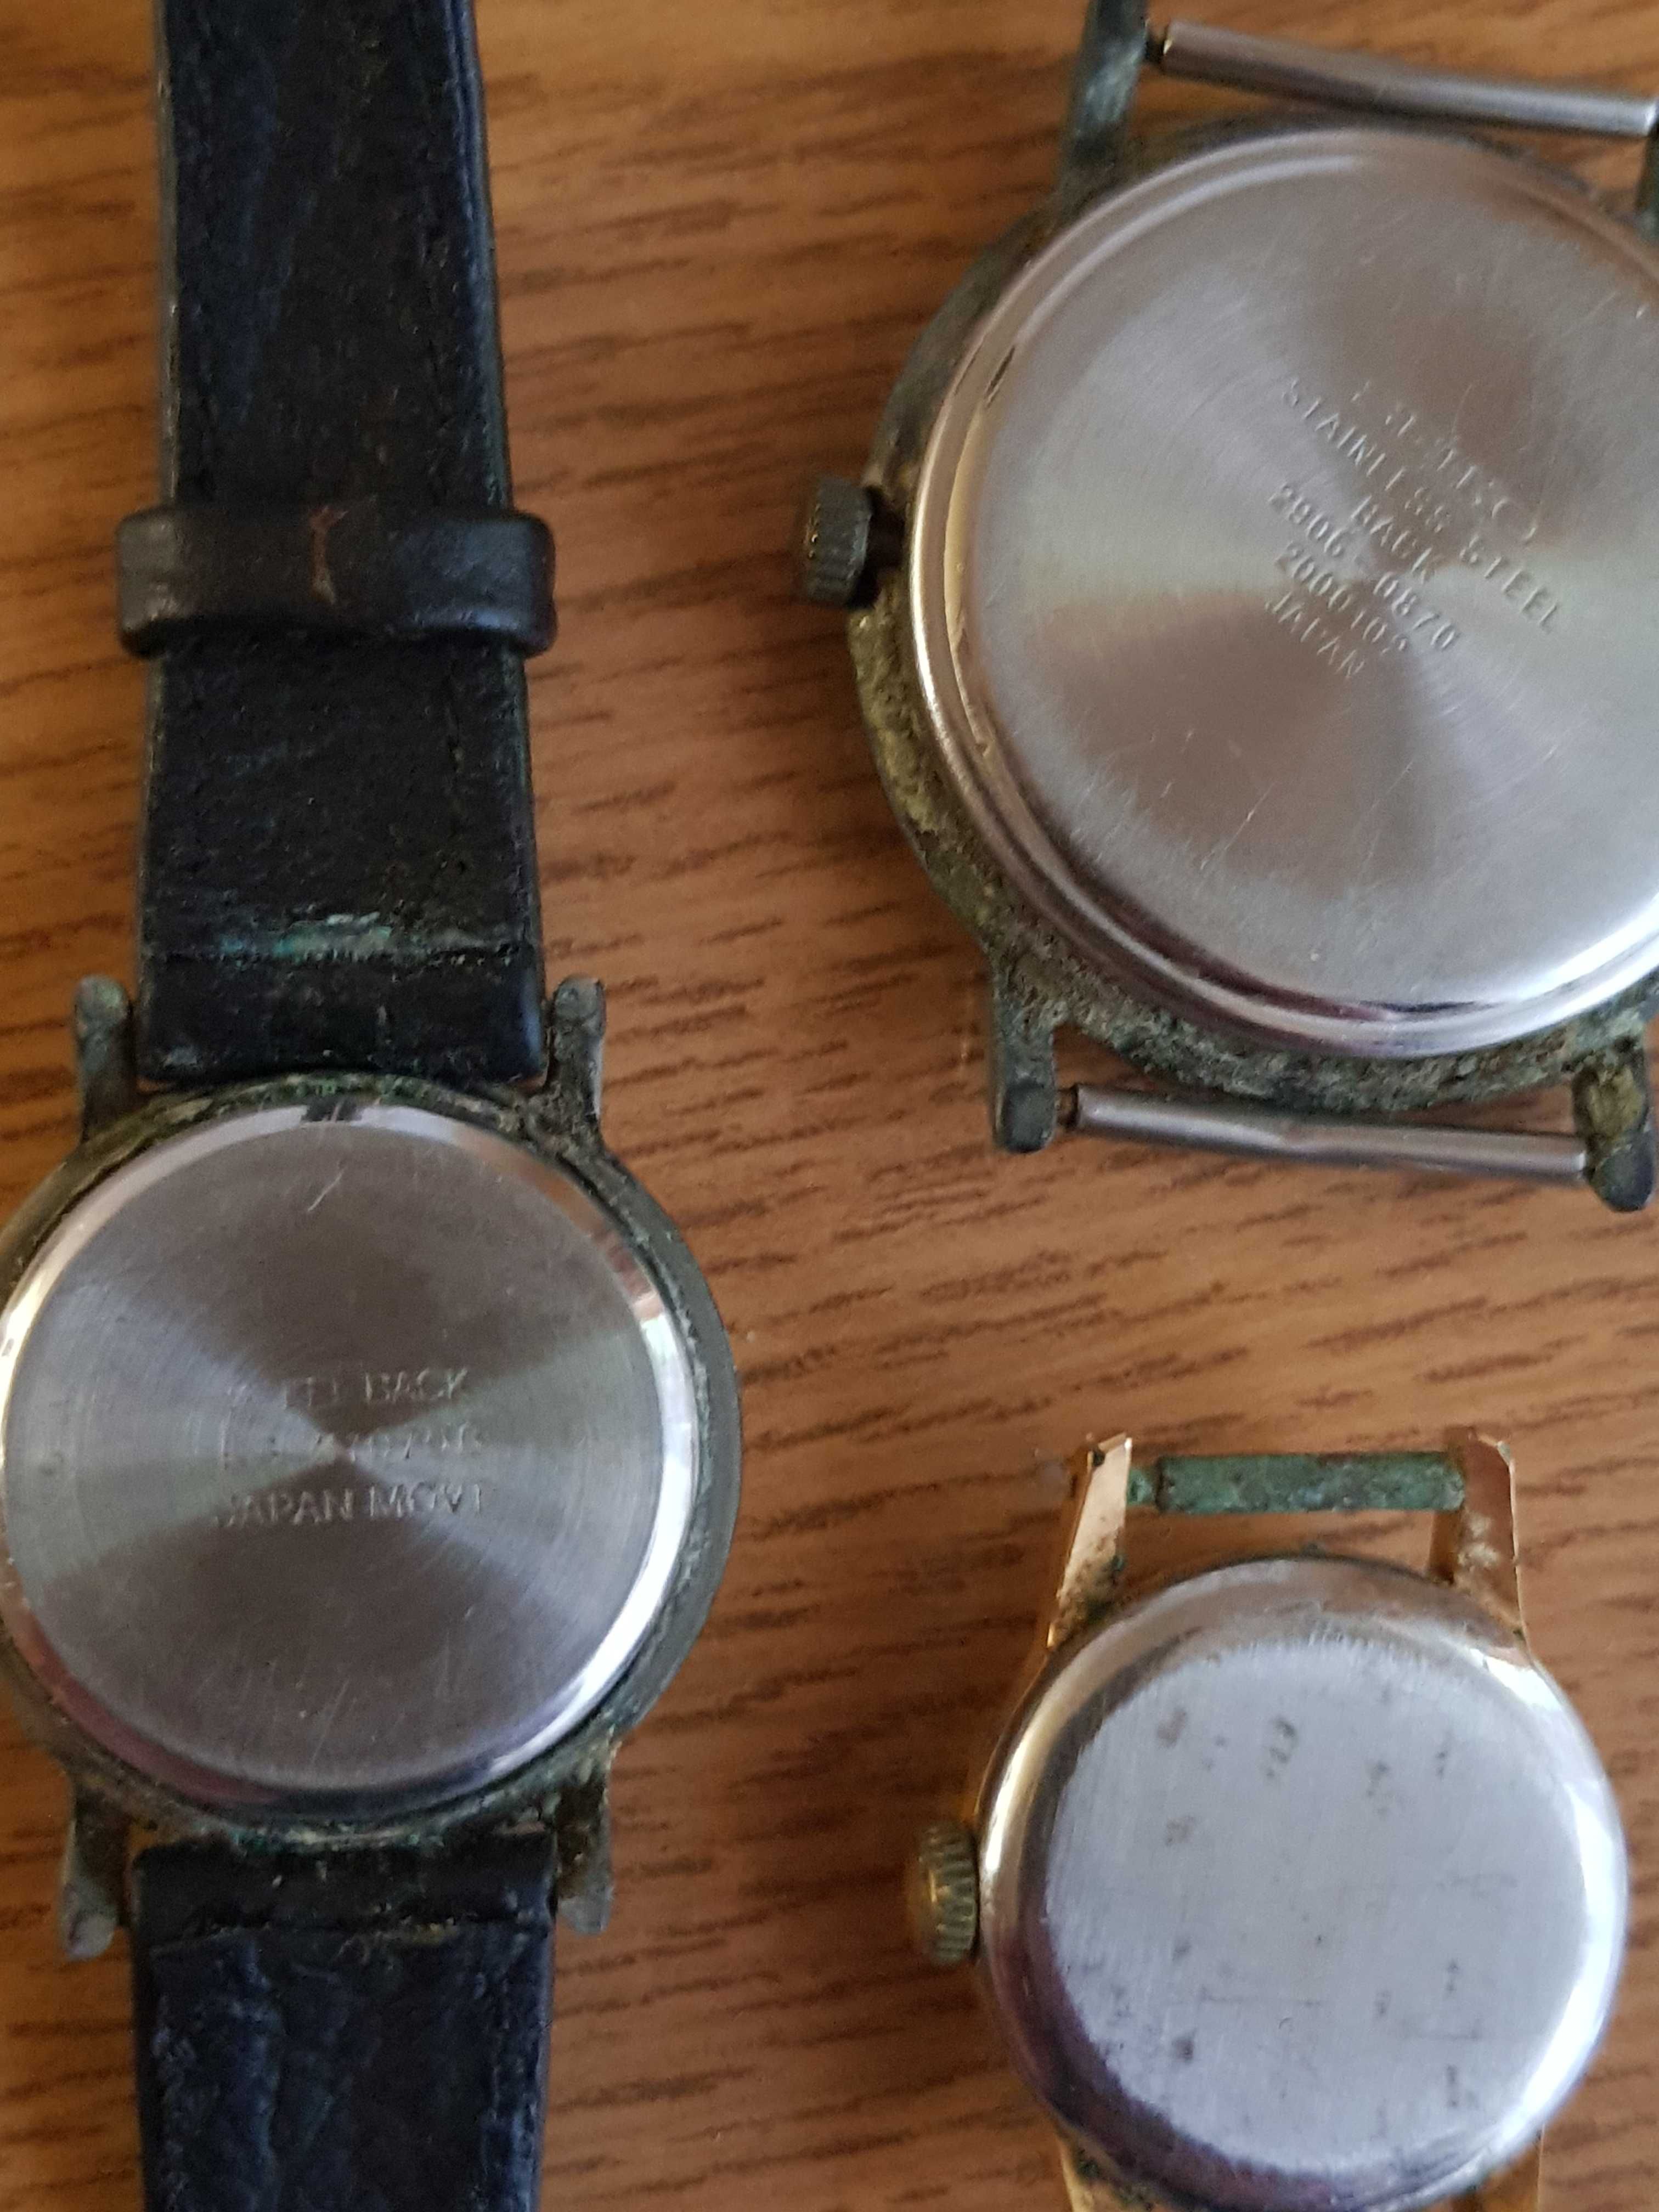 Zestaw - 3 stare zegarki (Seiko Japan) z lat 70 i 90-tych